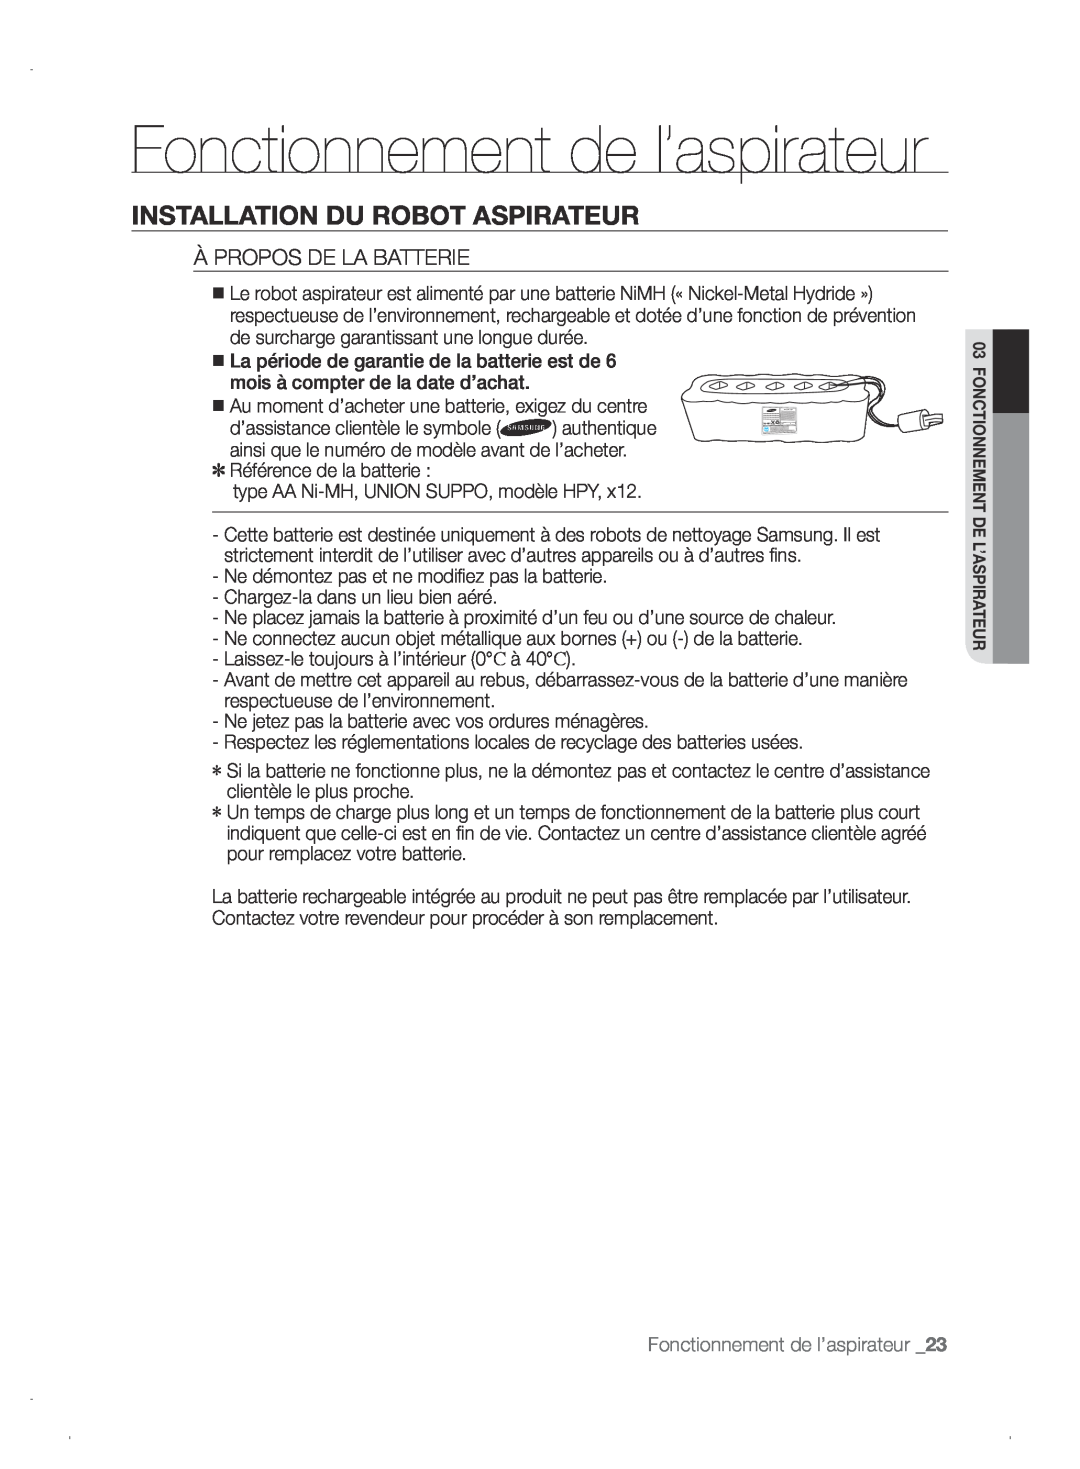 Samsung VCR8845T3A/XEF manual Fonctionnement de l’aspirateur, Installation Du Robot Aspirateur, À Propos De La Batterie 